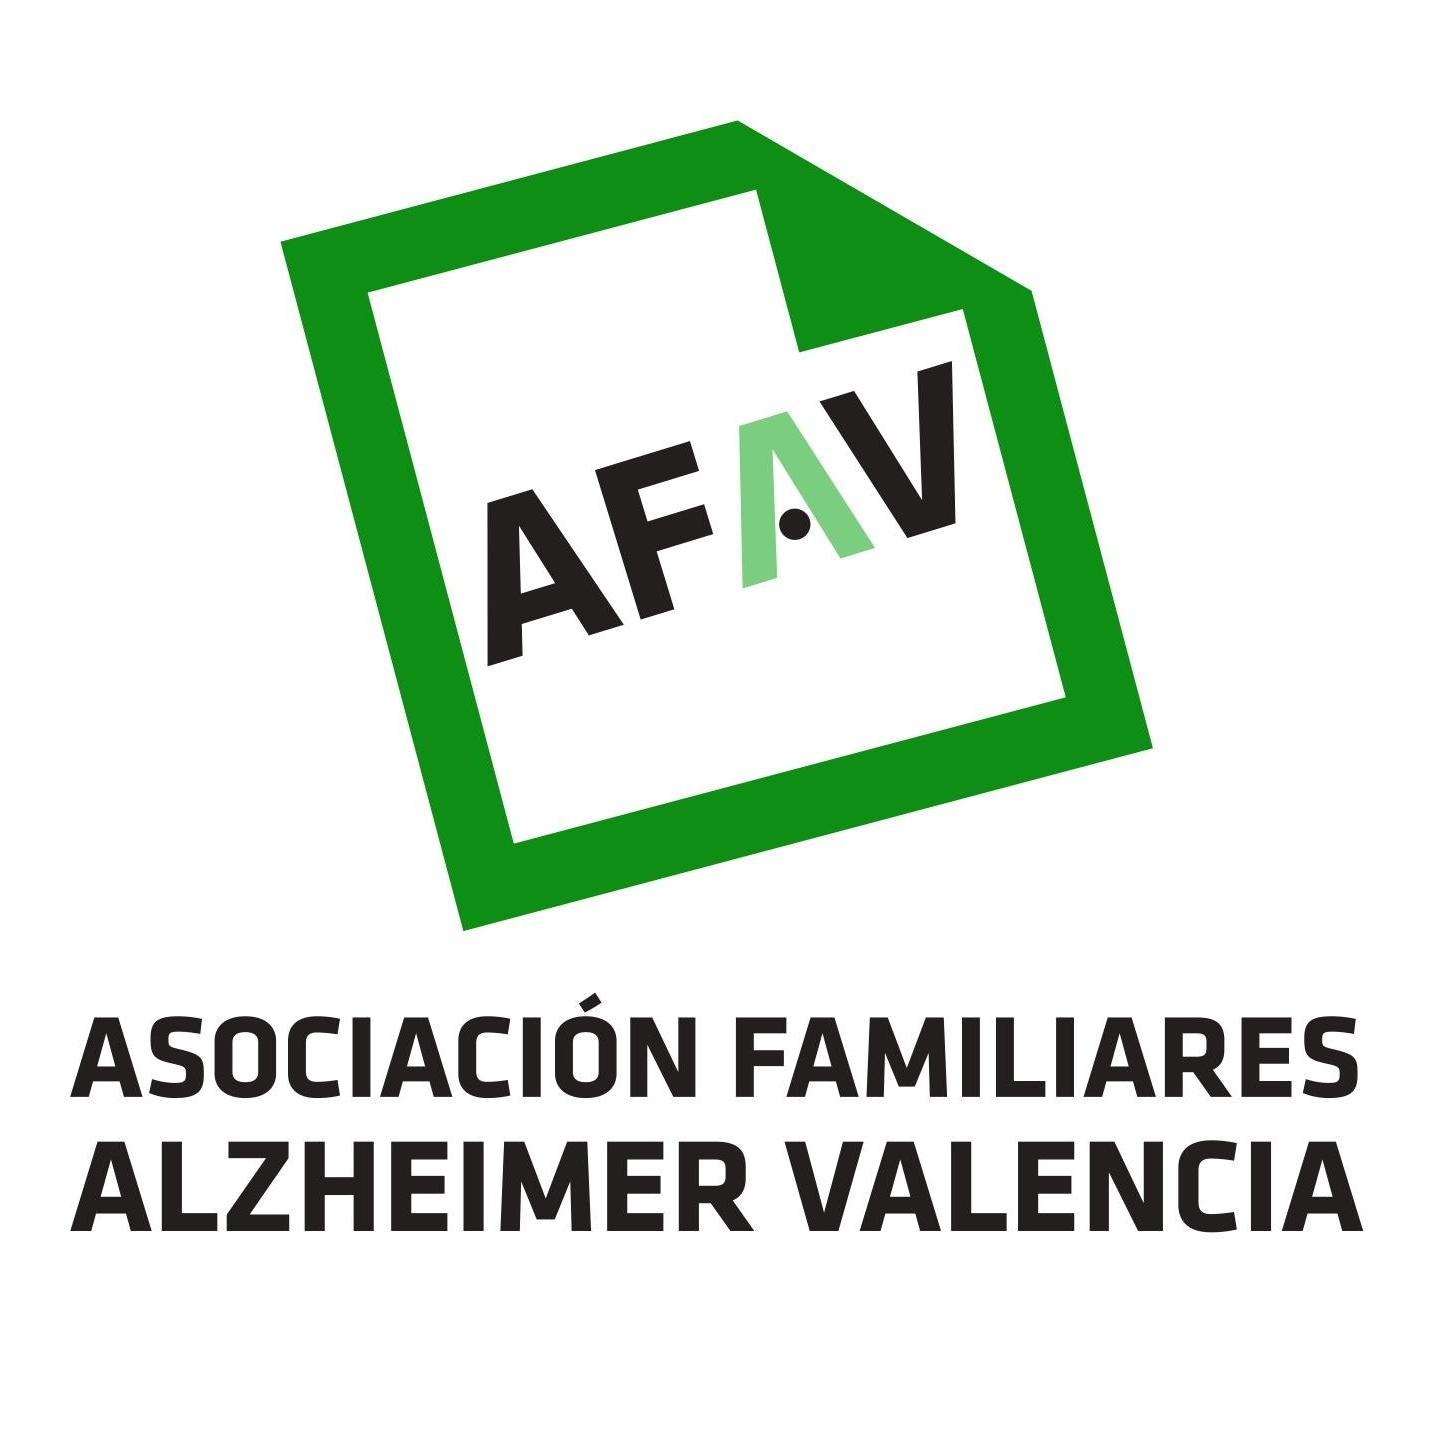 Asociación de Familiares de Alzheimer de Valencia - AFAV Profile, news, ratings and communication